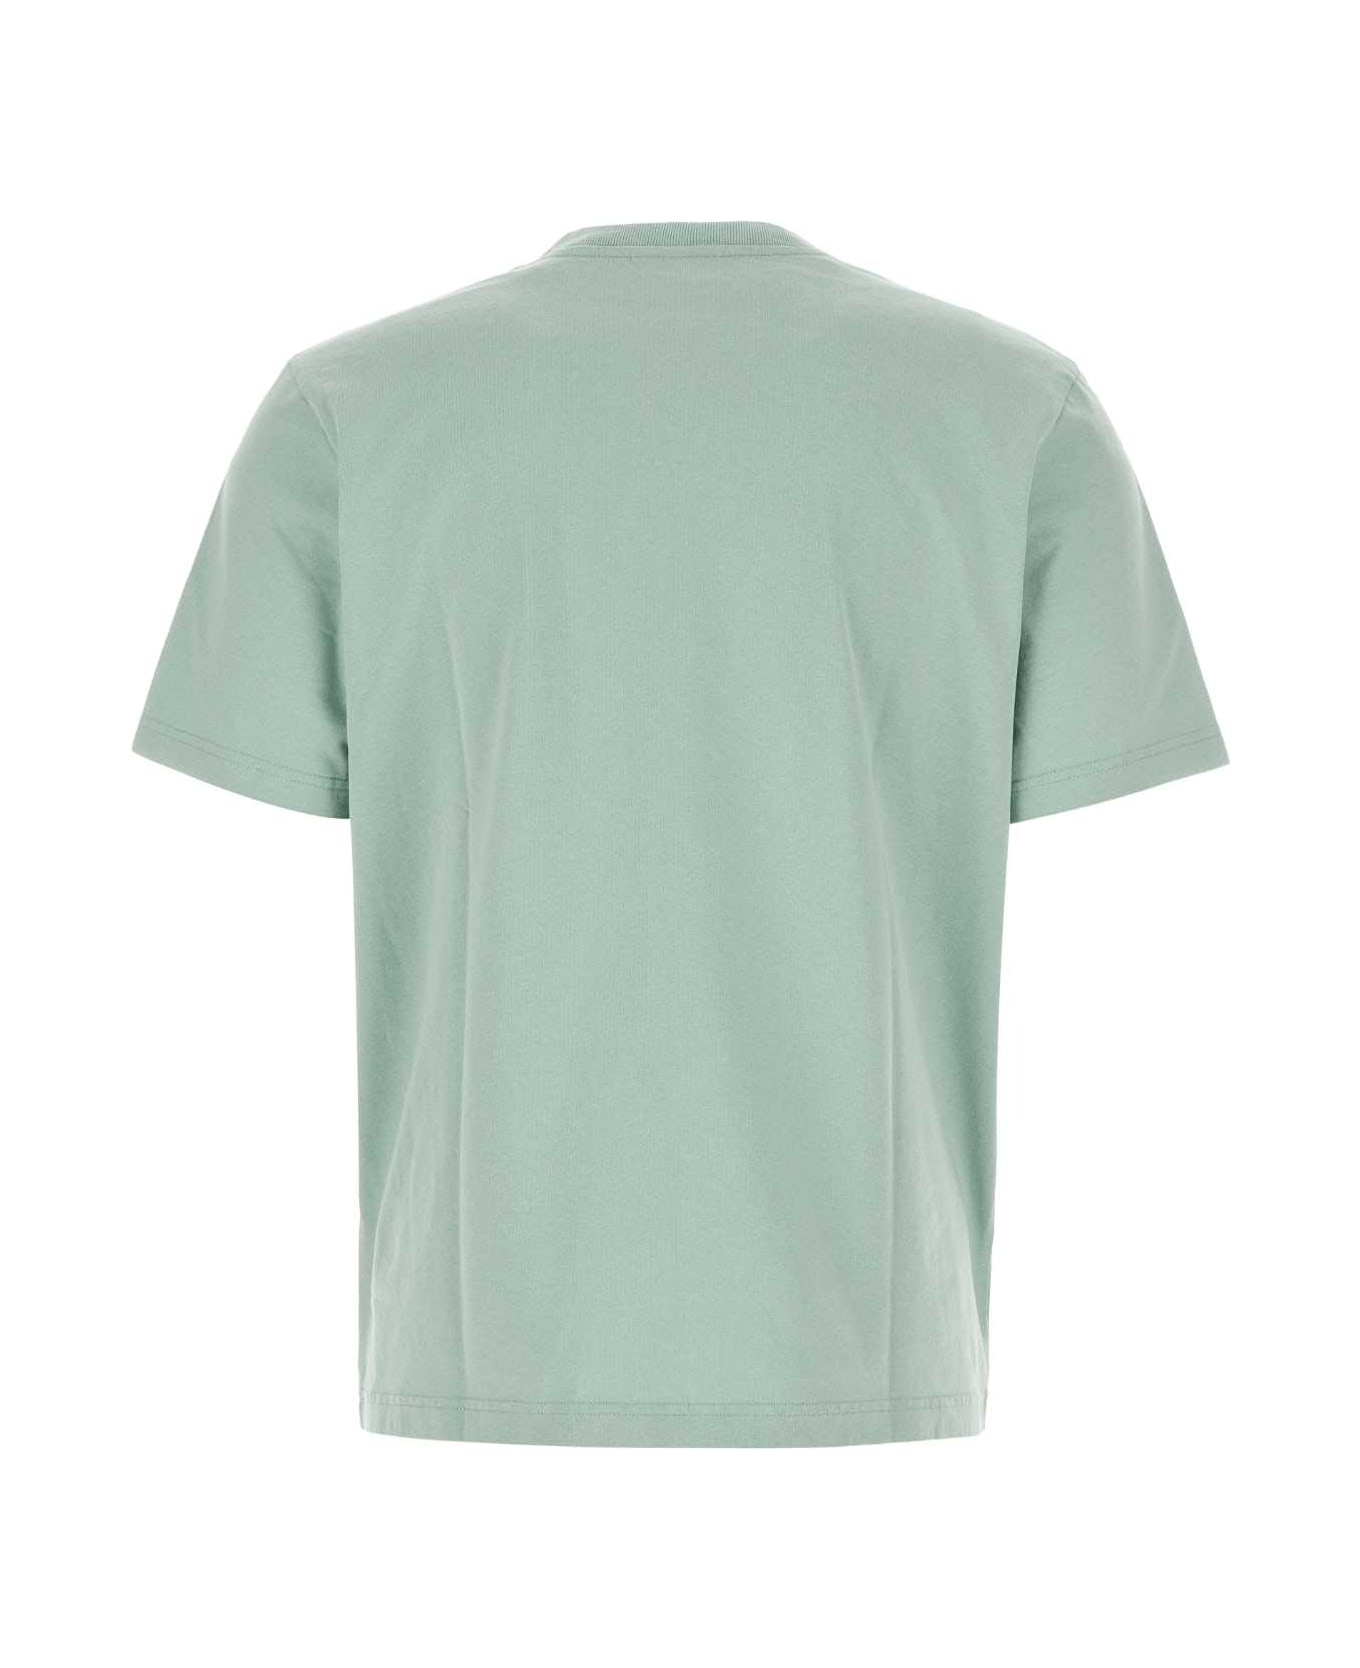 Maison Kitsuné Mint Green Cotton T-shirt - SEAFOAMBLUE